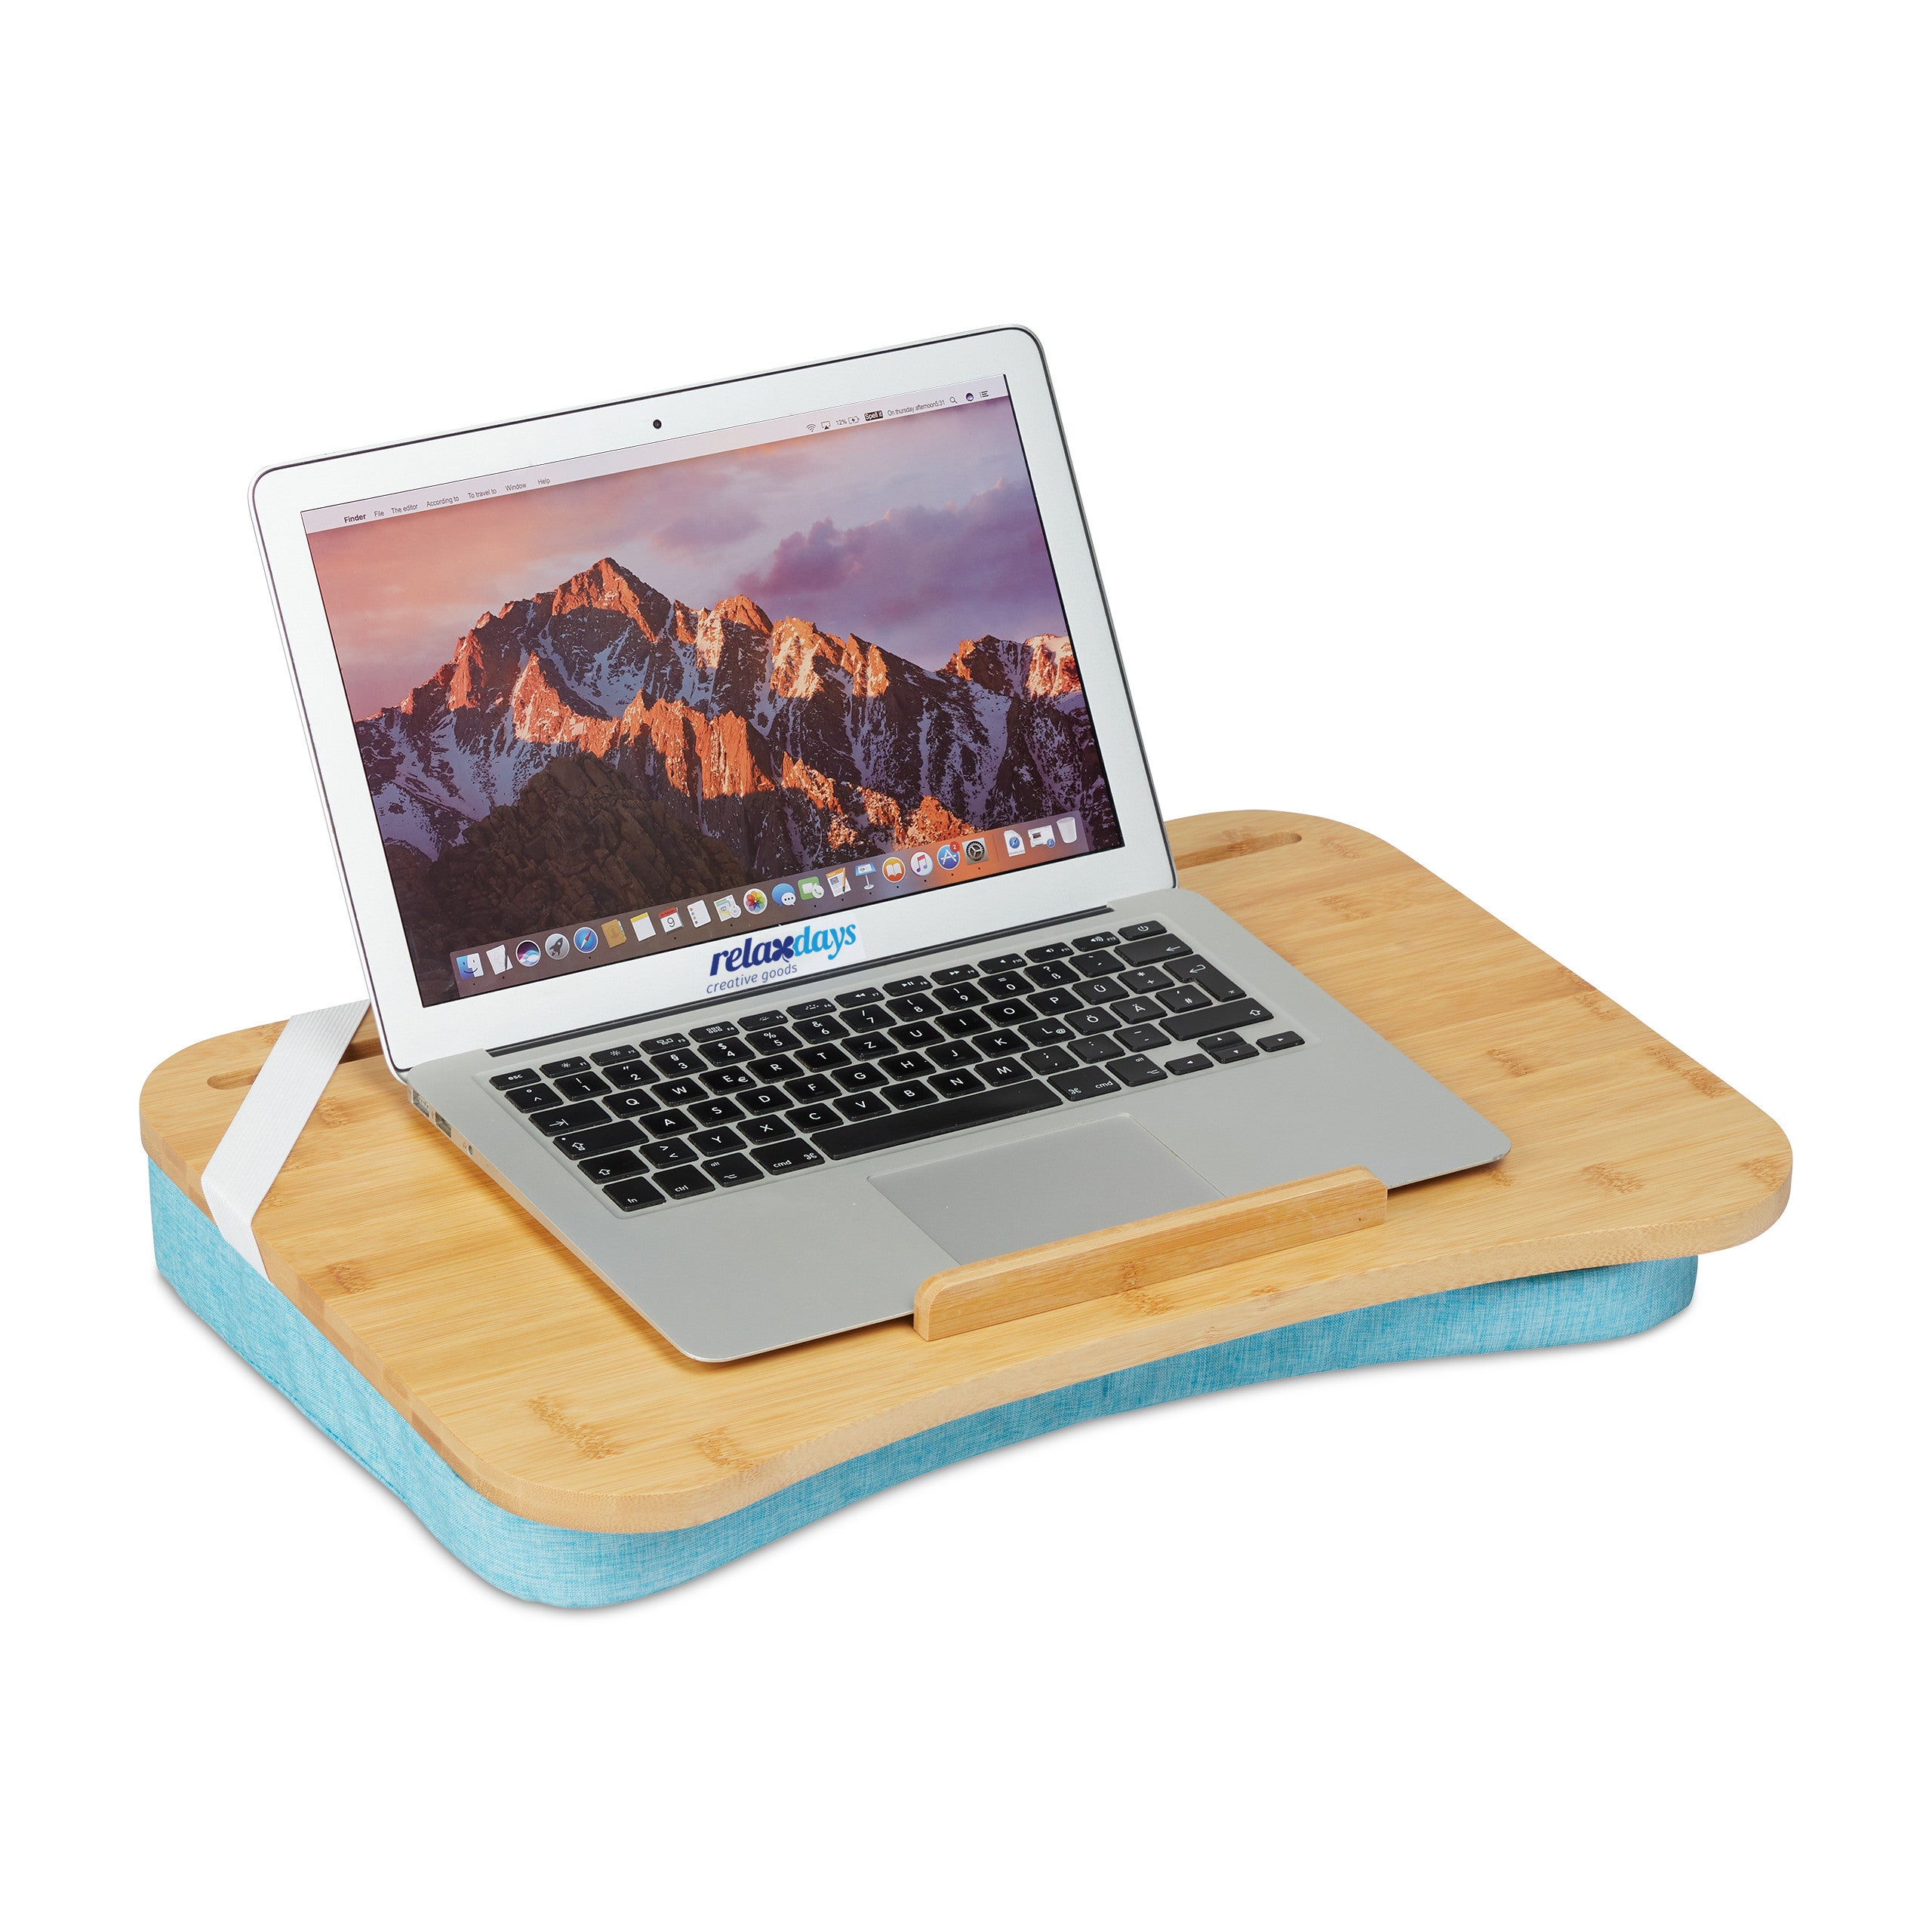 Support d'ordinateur portable portatif pour lit et canapé en bois